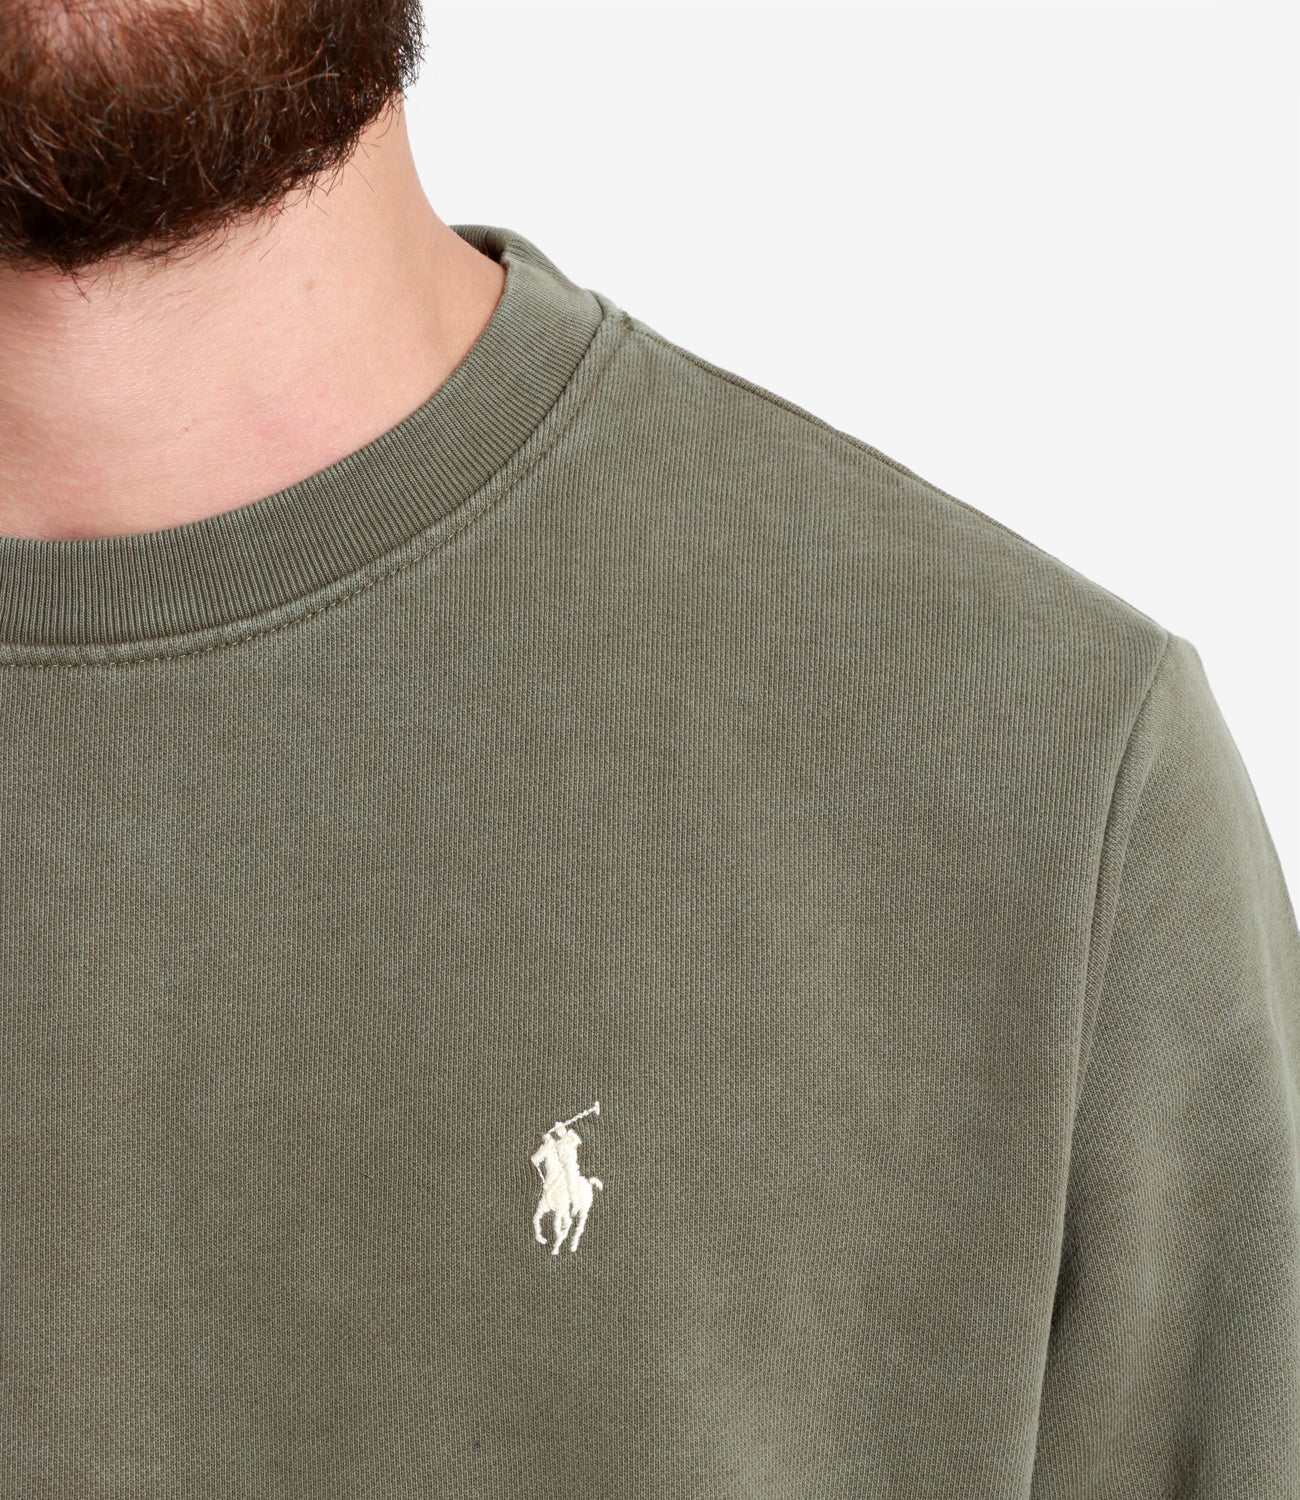 Polo Ralph Lauren | Olive Green Sweatshirt